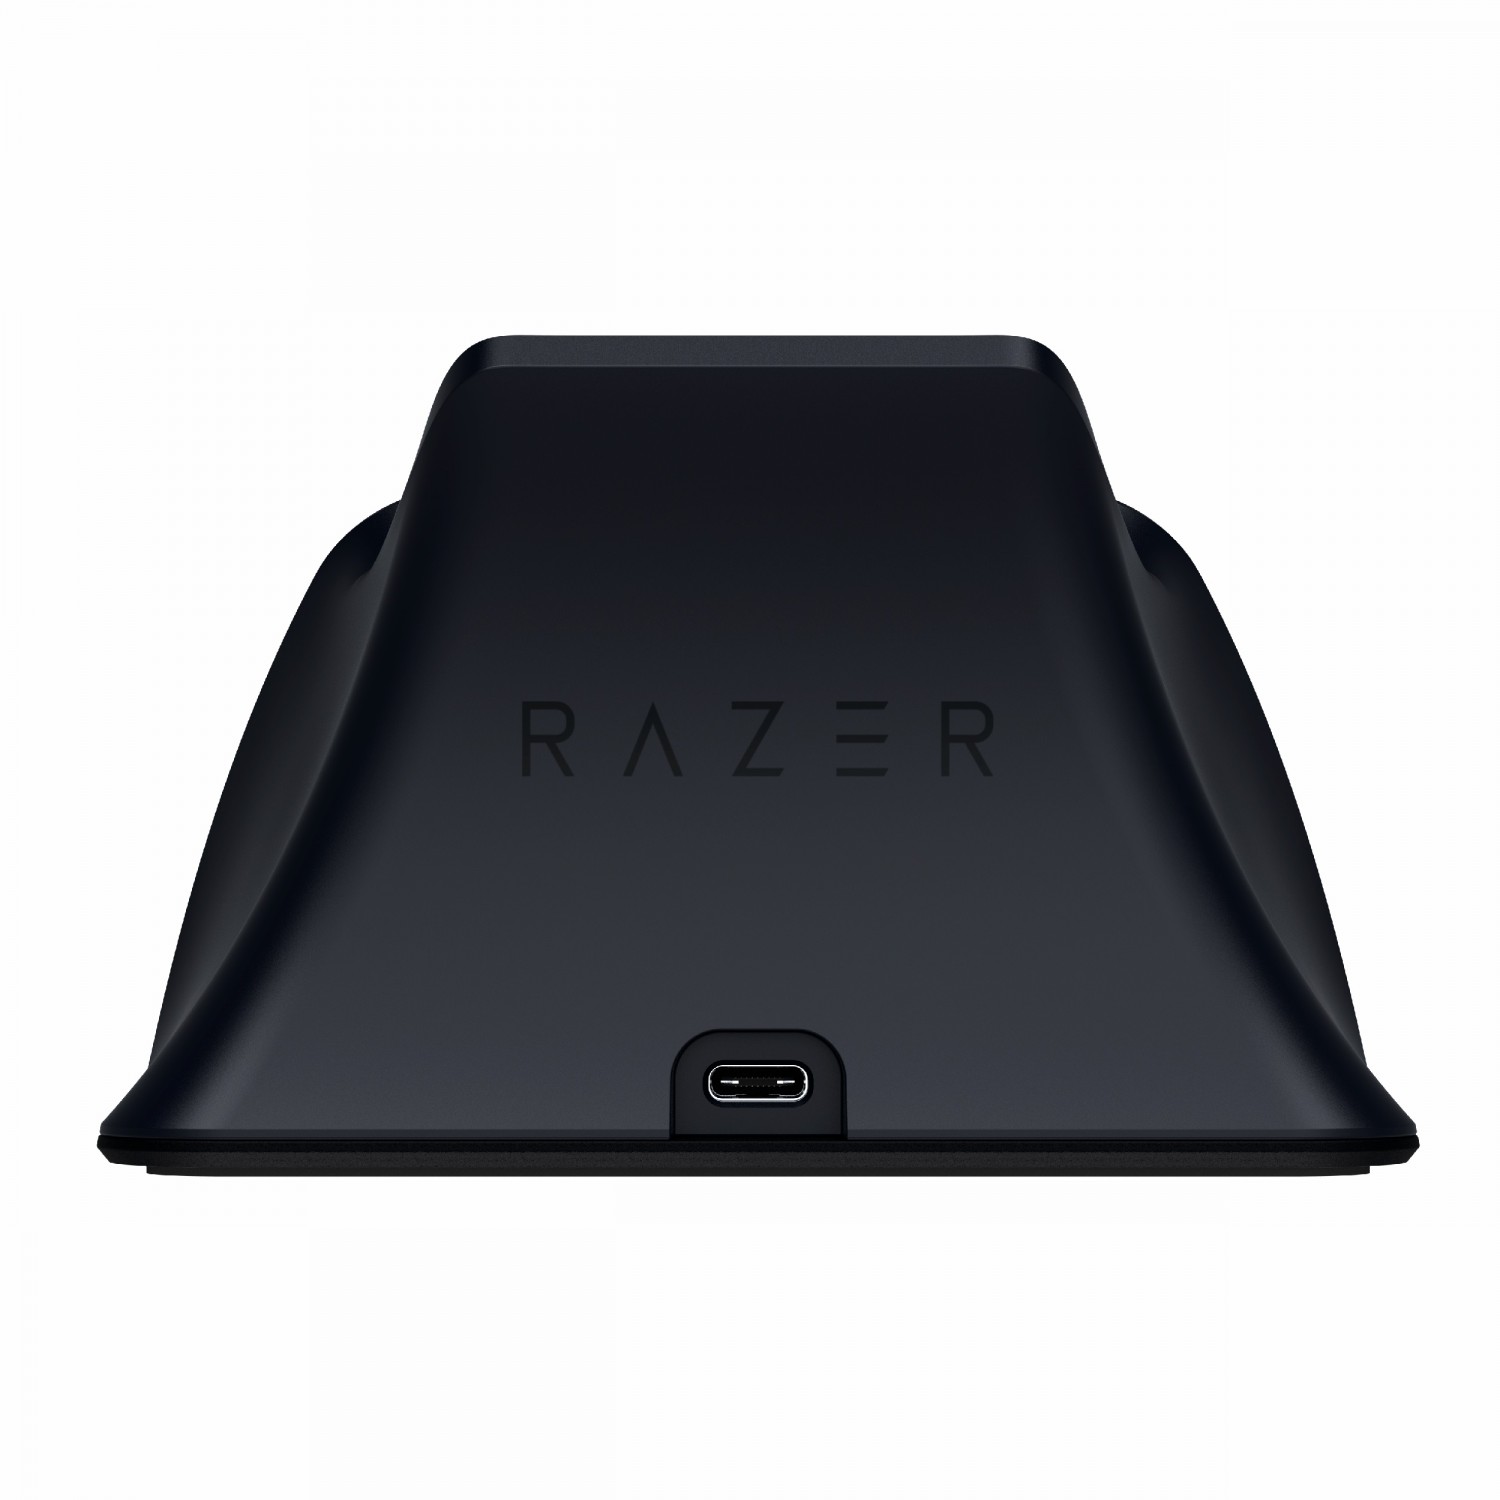 پایه شارژ Razer for PS5 - Black-4